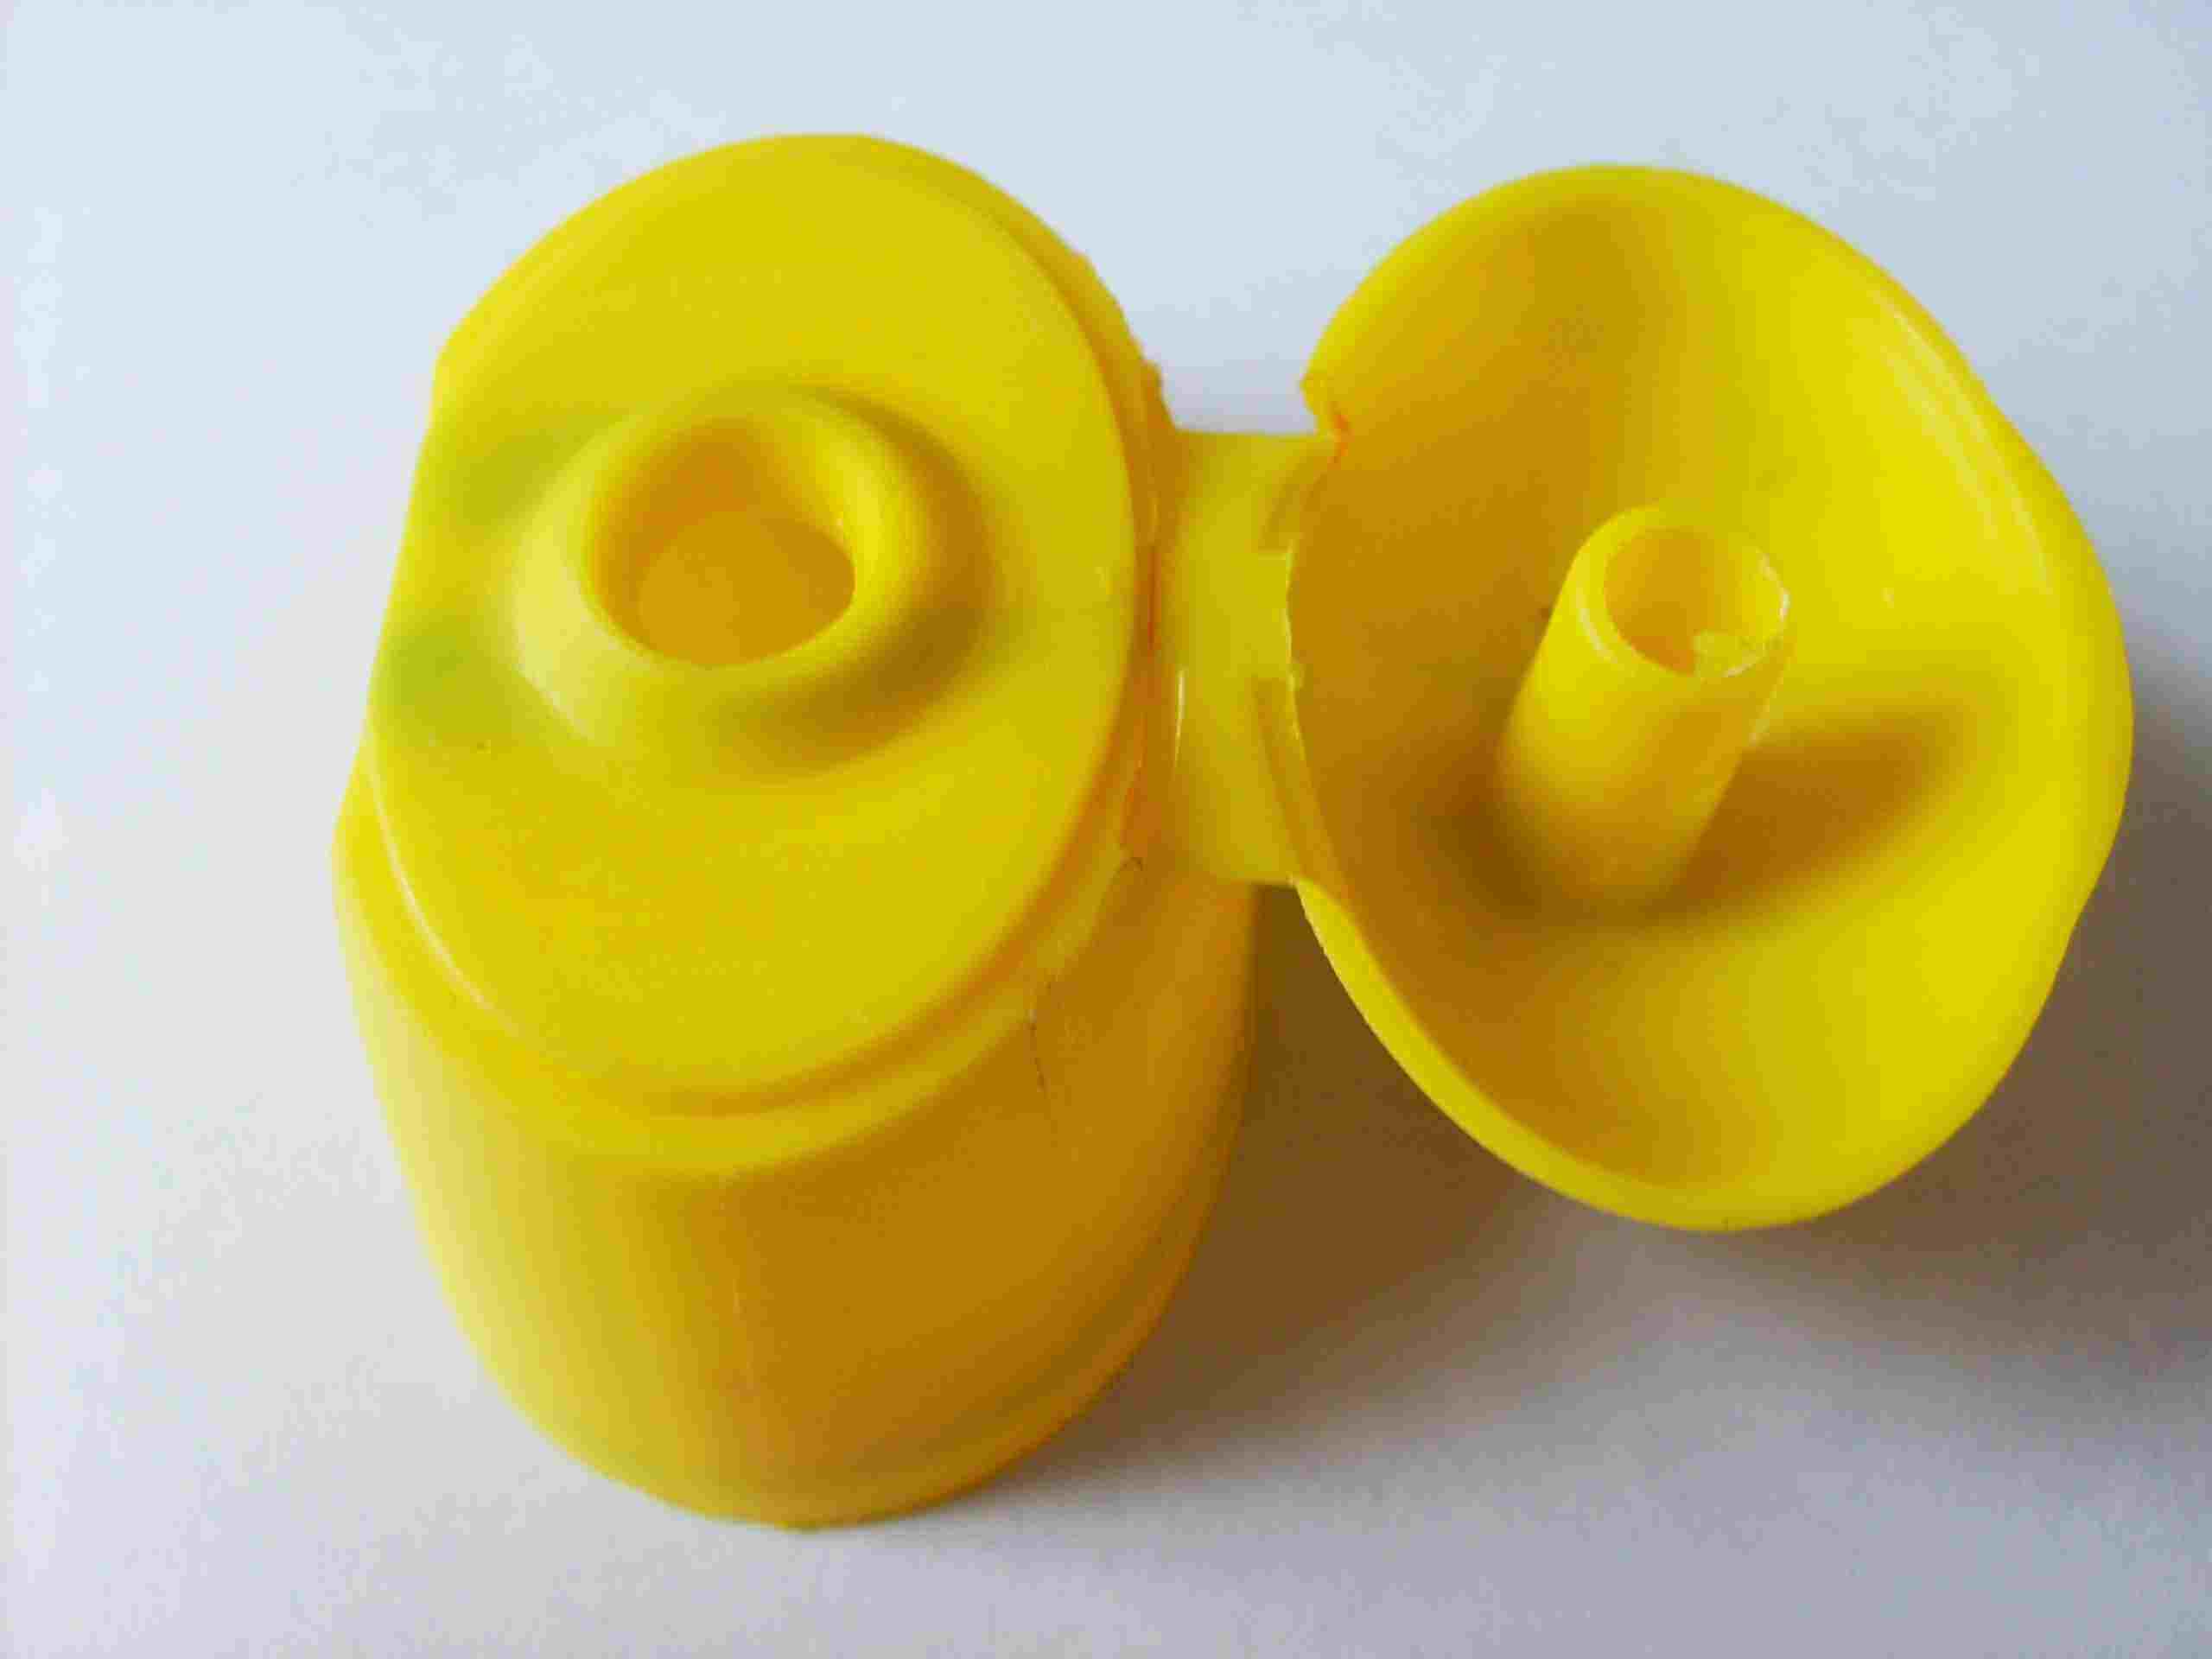 5-Plastic Cap & Closure Injection Molds/Moulds